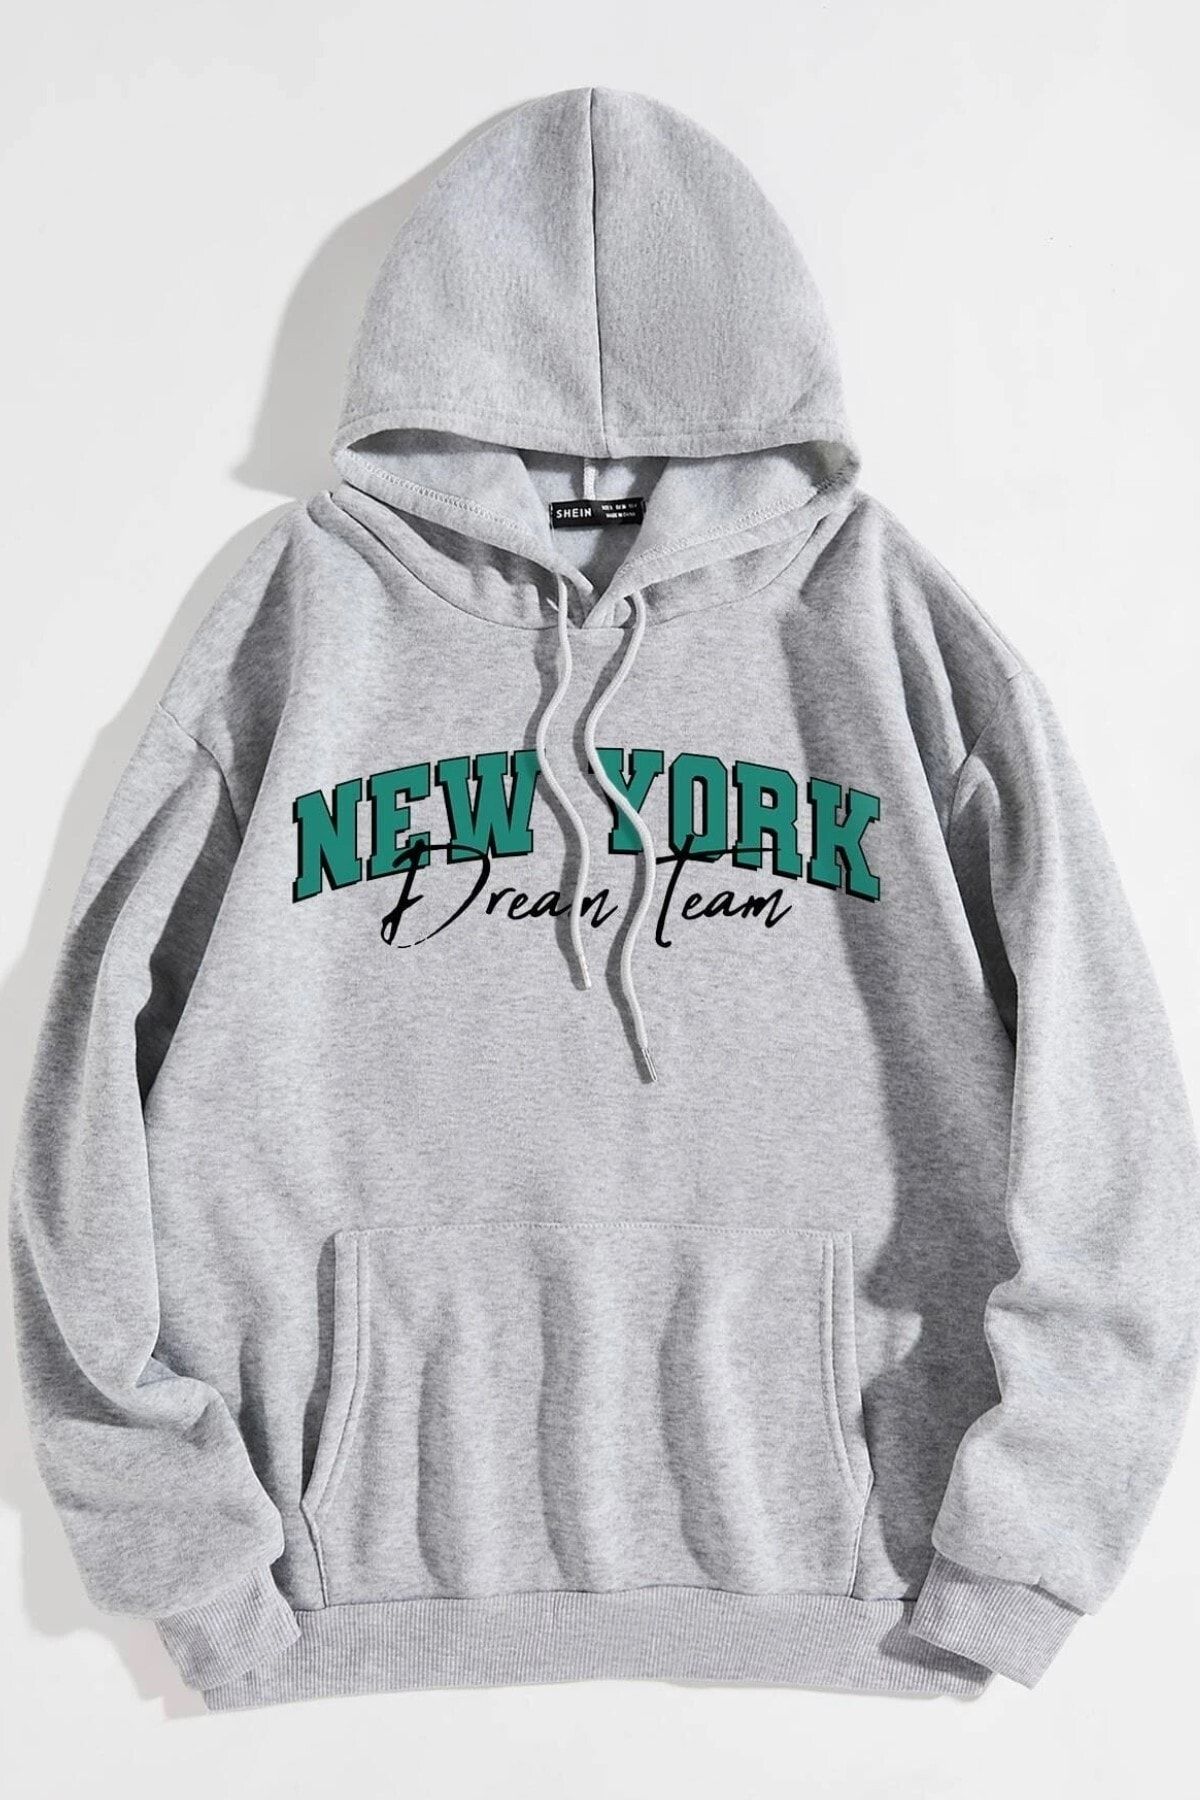 MODAGEN Unisex Gri New York Dream Team Baskılı Kapüşonlu Oversize Sweatshirt